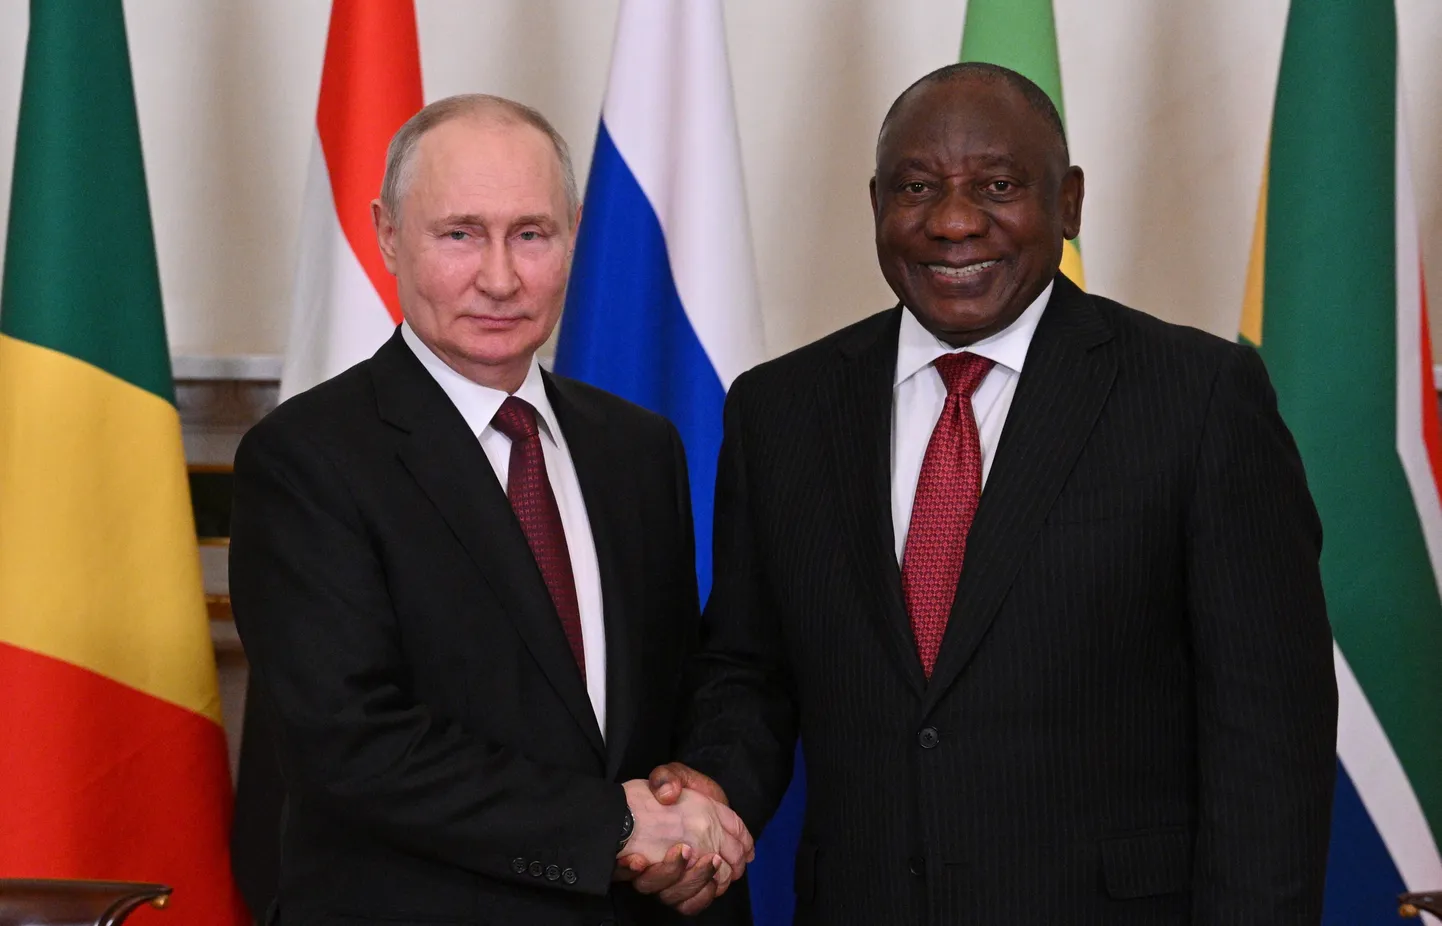 Vene režiimi juht Vladimir Putin ja Lõuna-Aafrika Vabariigi president Cyril Ramaphosa kohtumisel 18. juunil Peterburis